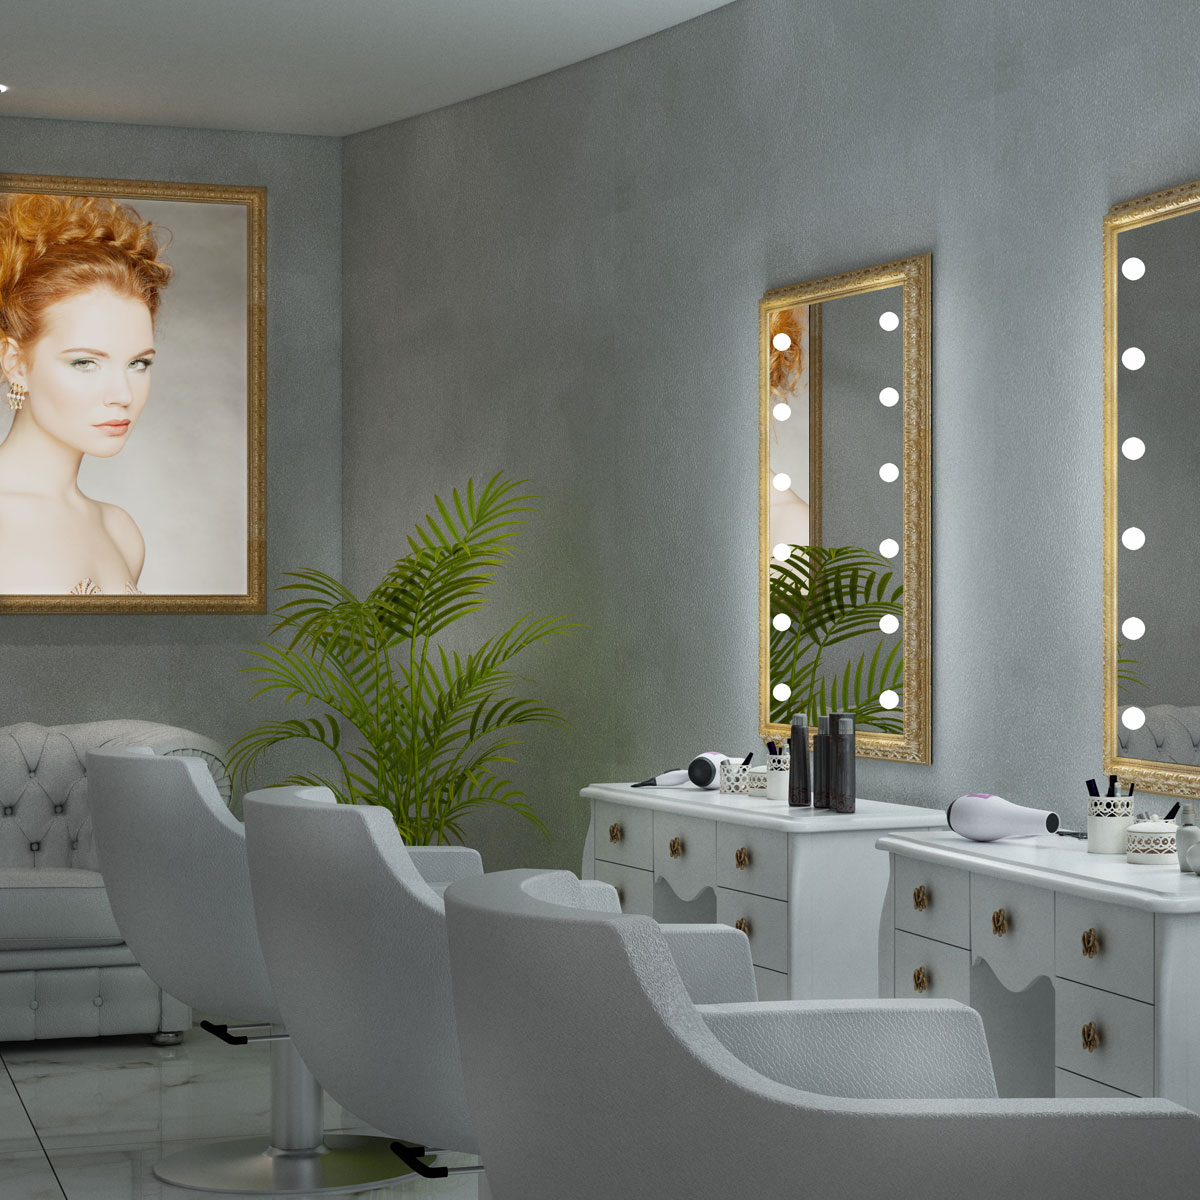 Hair salon mirrors and furniture